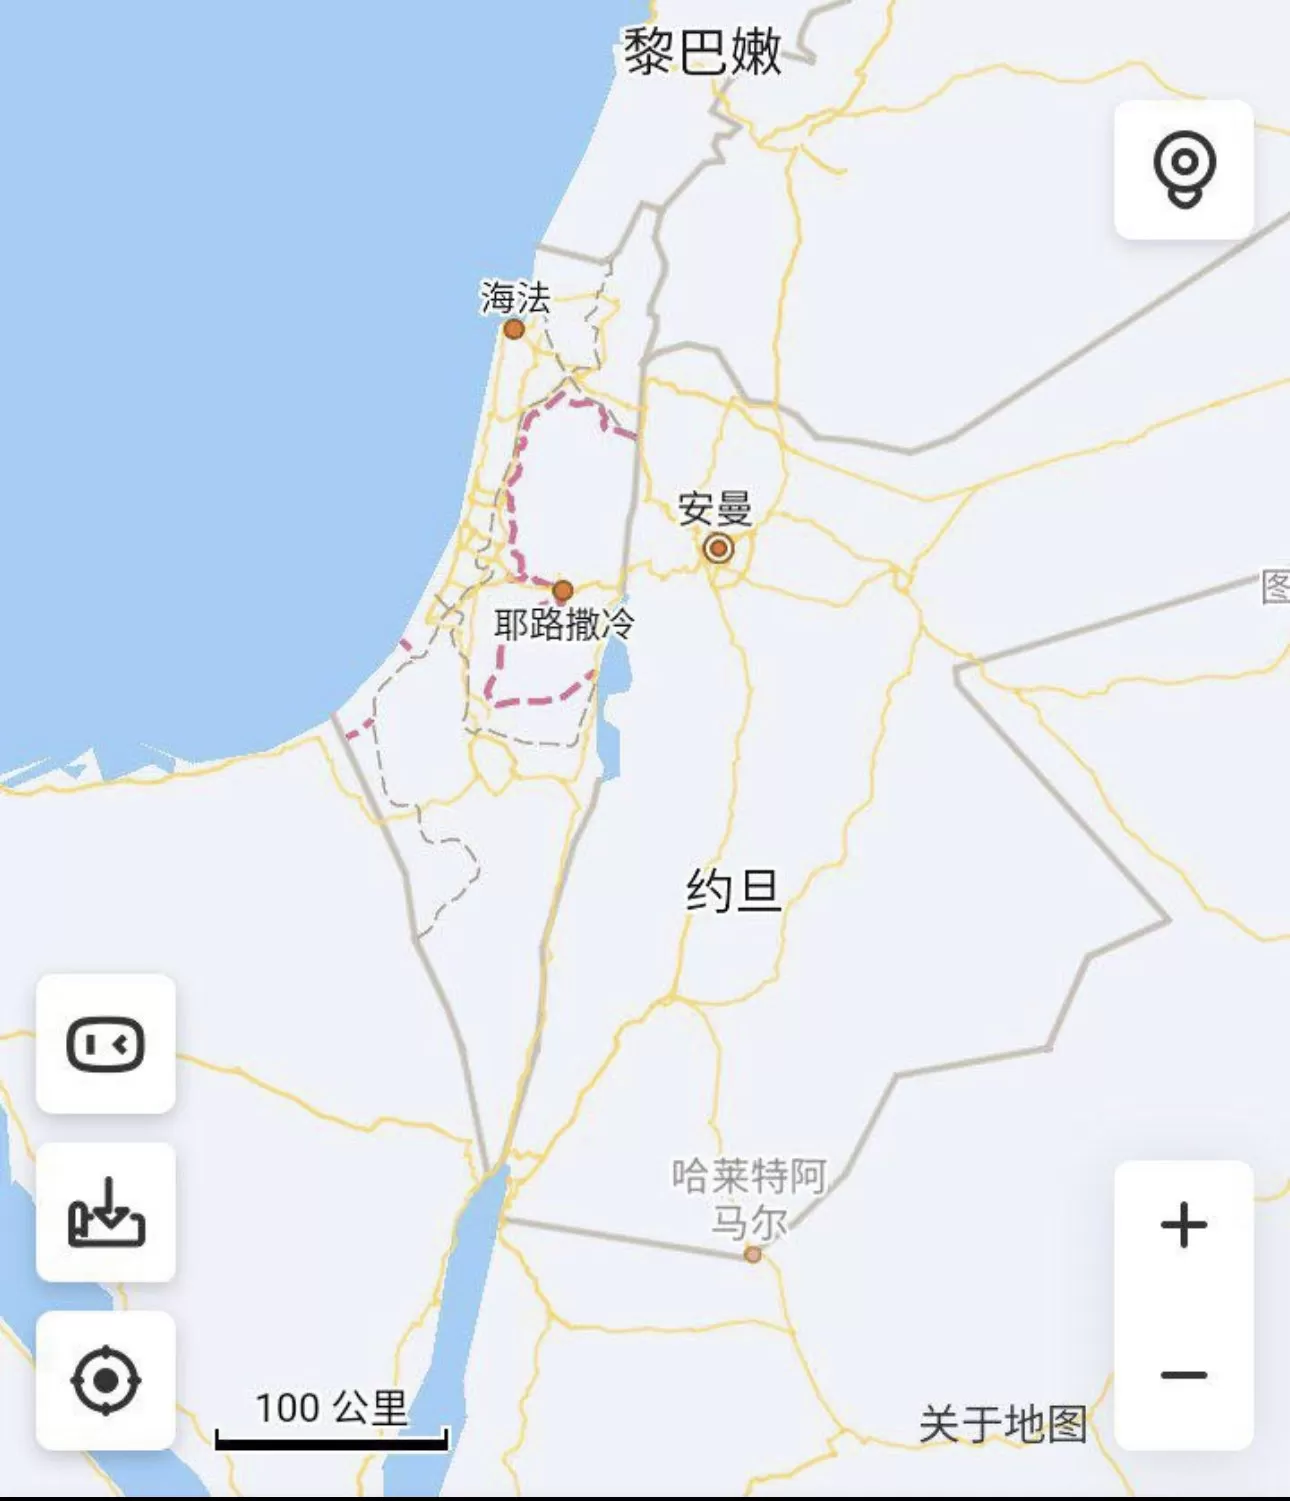 خريطة تظهر حذف تطبيقات صينية اسم إسرائيل من خرائطها